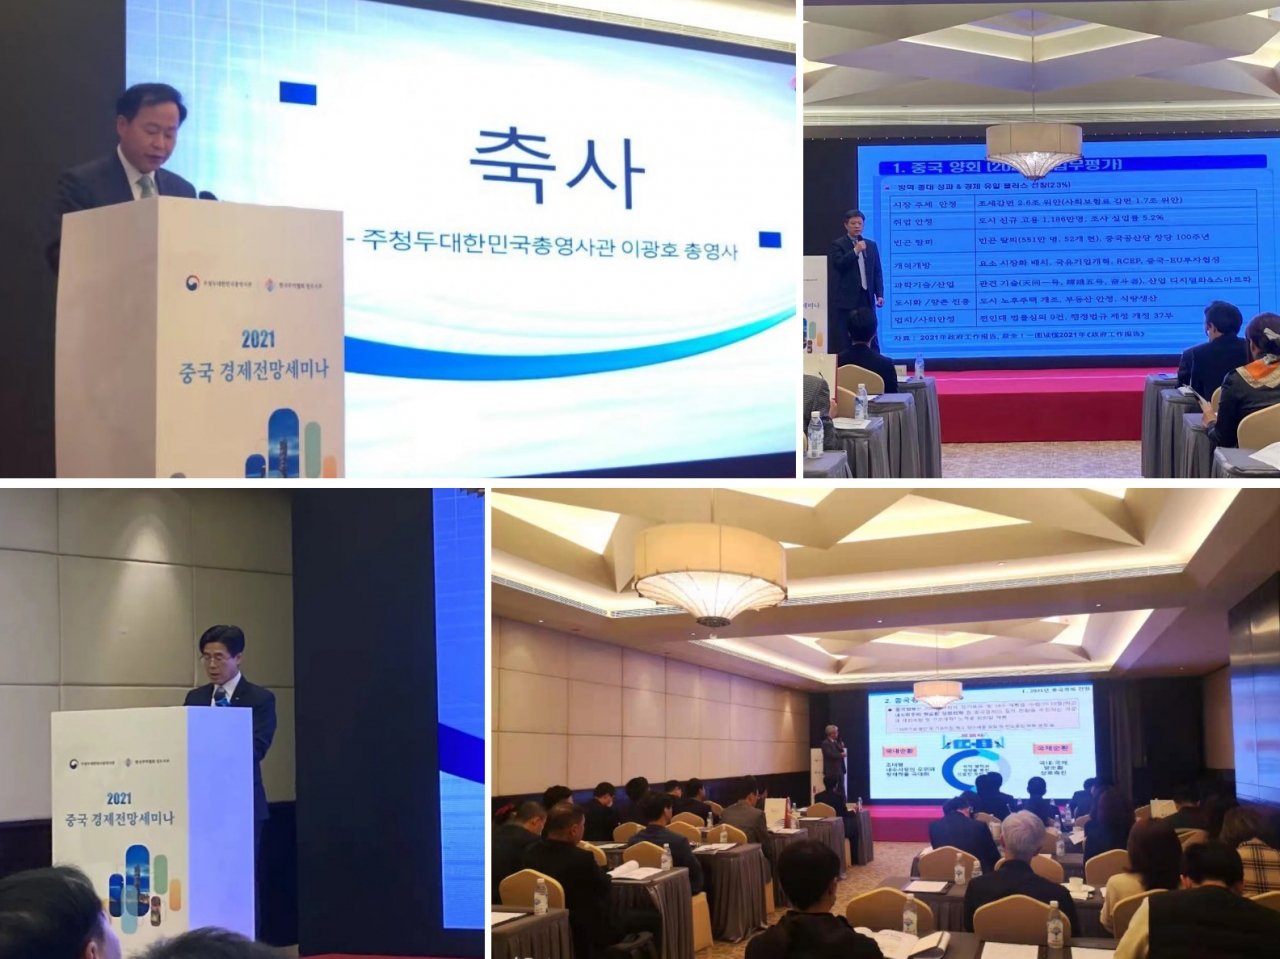 주청두총영사관과 한국무역협회 청두지부가 지난 3월 쓰촨성 진출기업인 및 교민들의 중국 경영활동 등에 필요한 정보를 제공하기 위해 ‘2021 중국 서부 경제전망 세미나’를 개최했다.